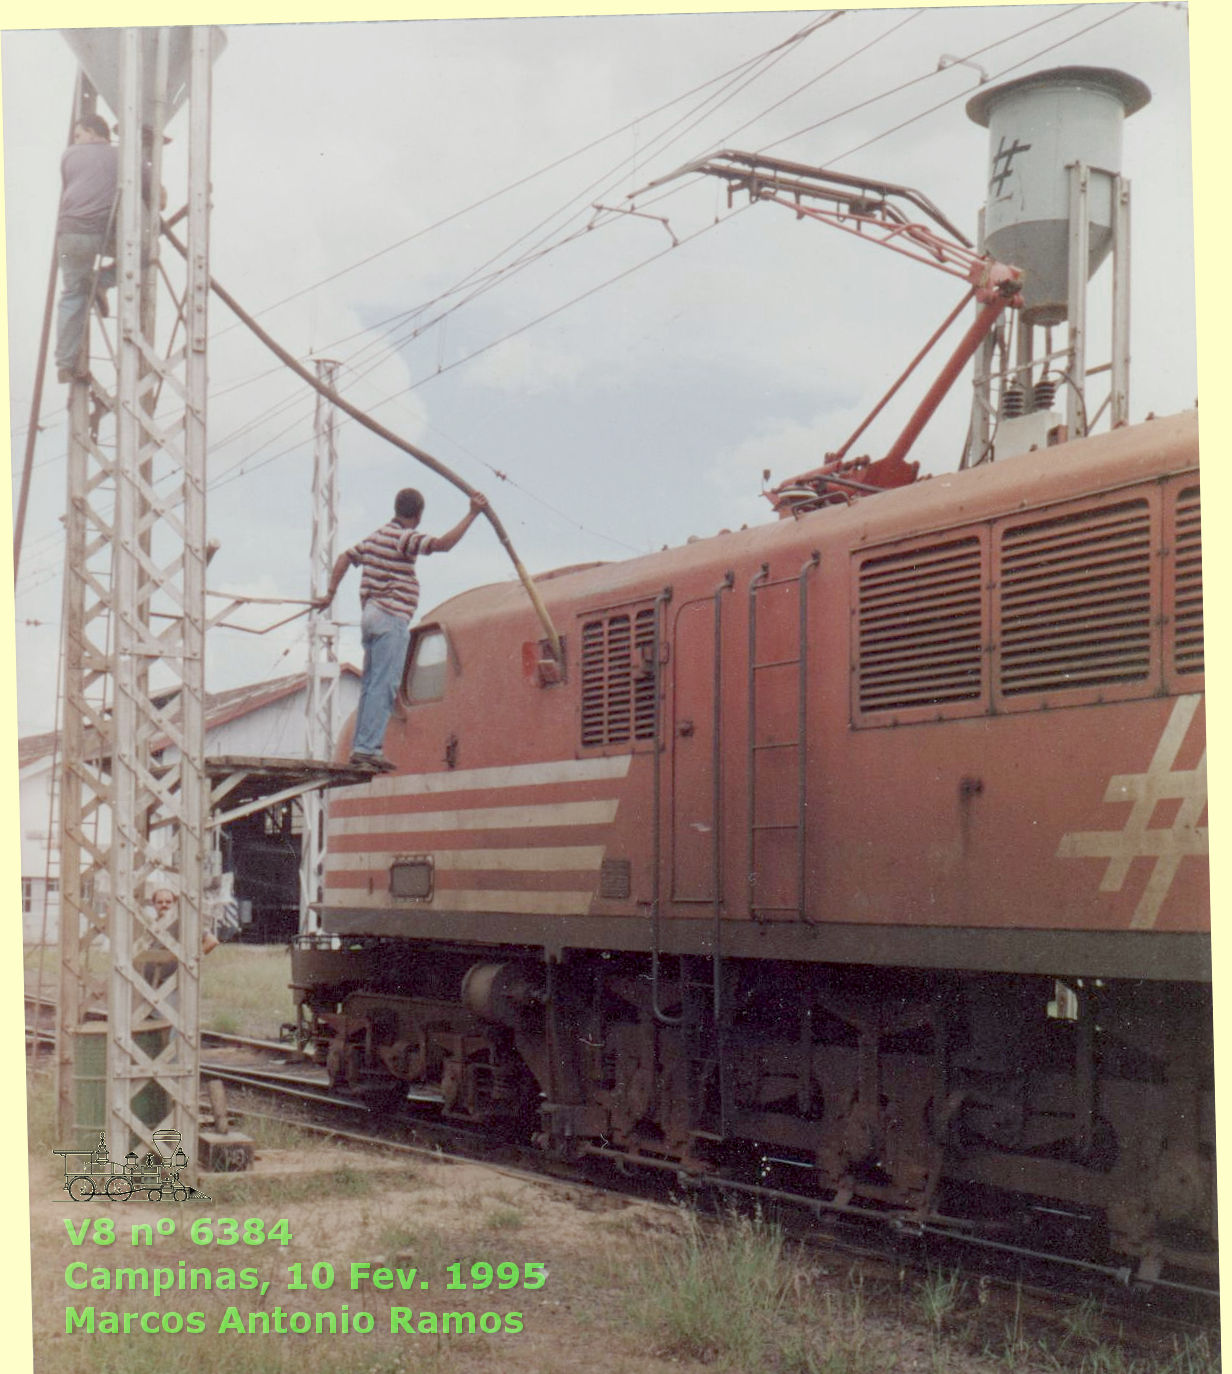 Locomotiva V8 nº 6384 Fepasa no areieiro em Campinas, 1995